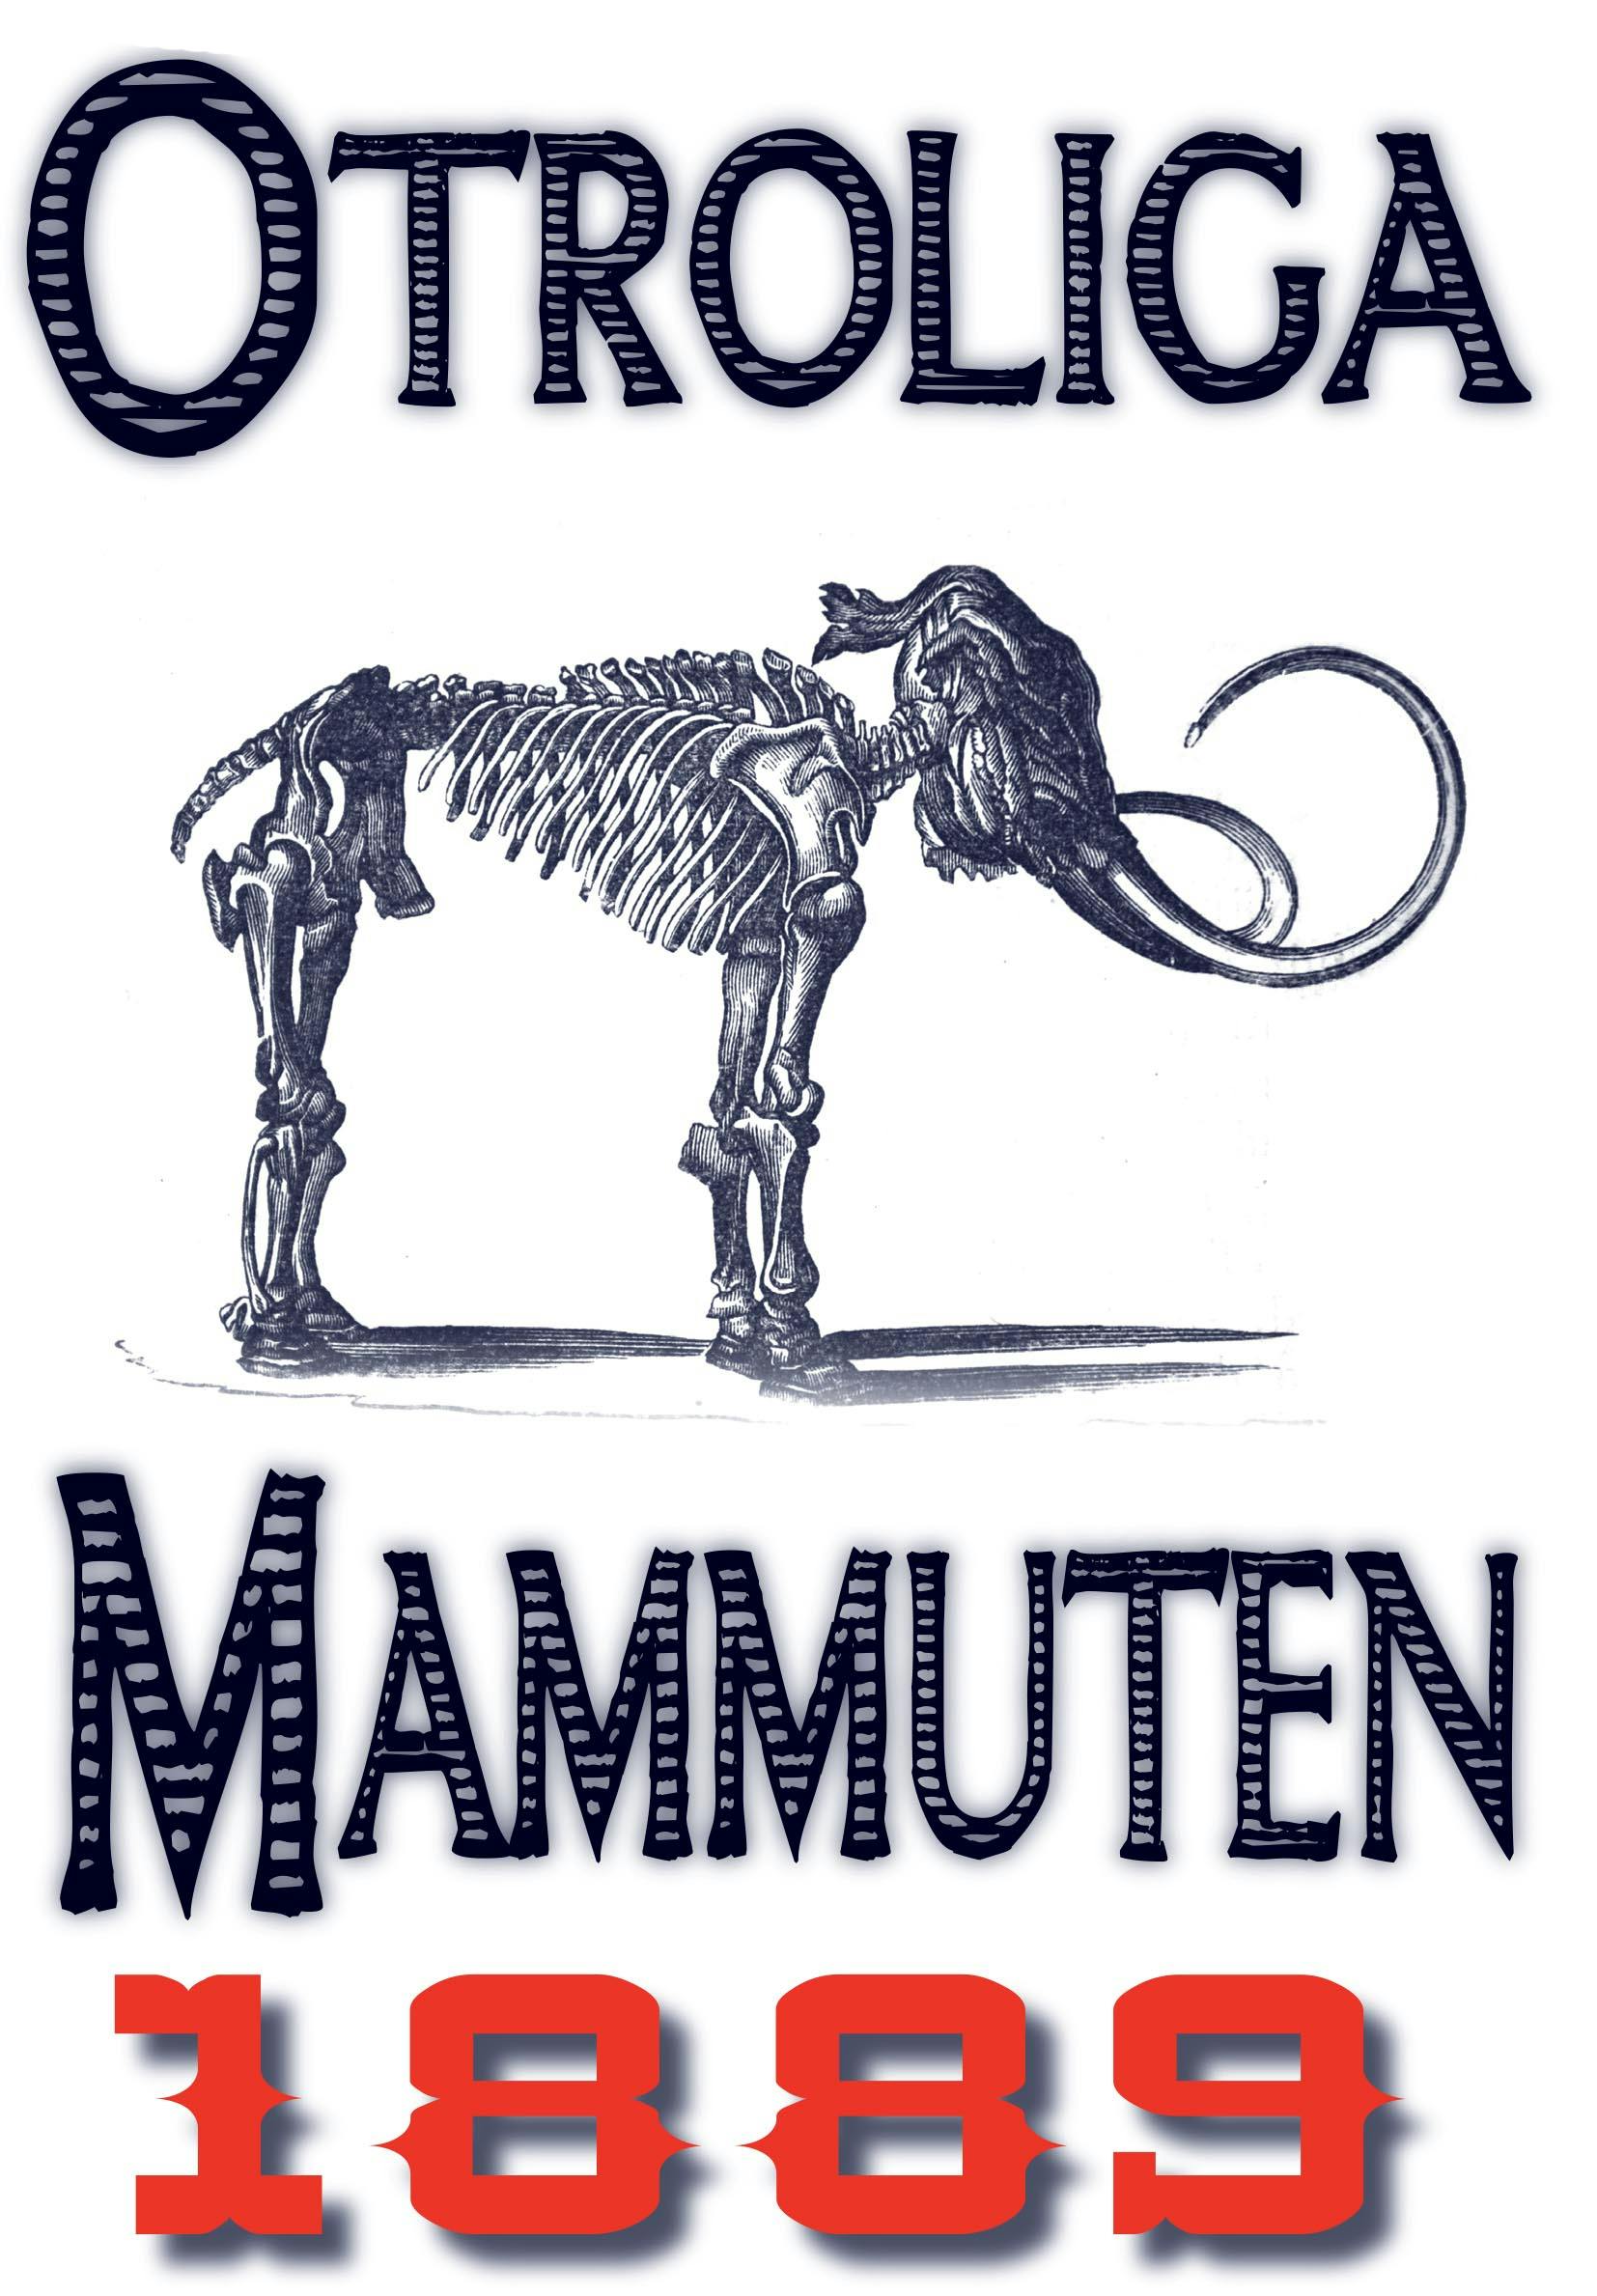 Minibok: Den otroliga mammuten – Återutgivning av text från 1889 - Anders Johan Malmgren